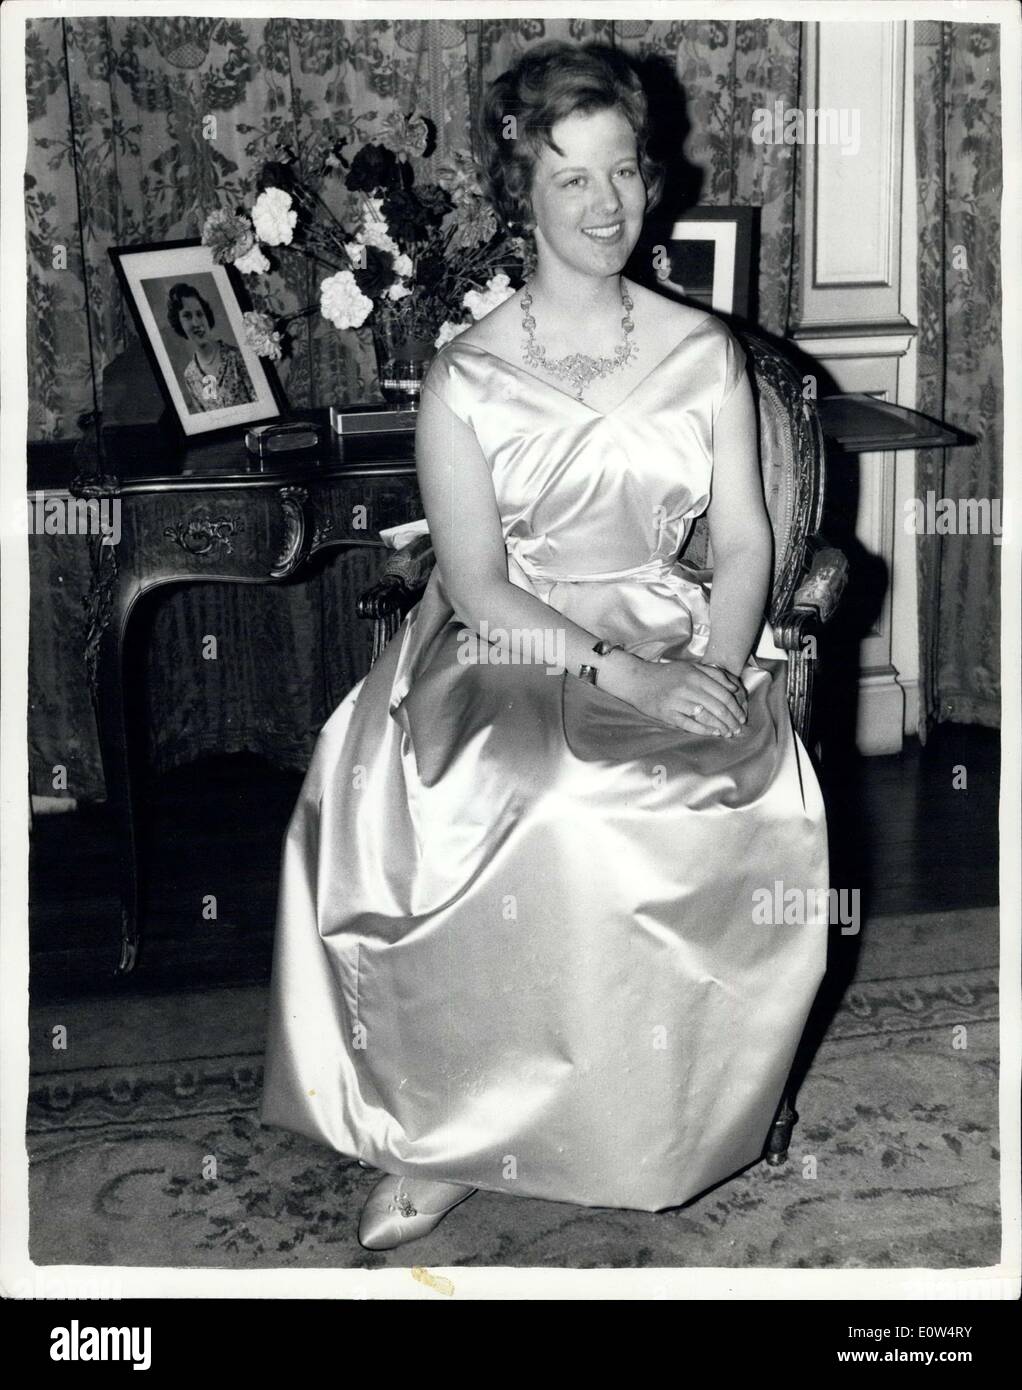 16. April 1961 - Dänemarks Prinzessin Celebrates w1st. Geburtstag - in London. Sie trägt eine geliehene Kleid. Prinzessin Margrethe von Dänemark veranstaltet ihr '' Schlüssel des Schlosses '' Party in der dänischen Botschaft in London heute Abend. Die Prinzessin, die Archäologie in Cambridge studiert kamen in London nur just in Time für die Partei von ihren Oster-Urlaub in Norwegen, wegen dem dänischen Transport Strike, die auch die Ankunft ihrer Partei Robe, verzögert, so sie hatte eine Kleid zu leihen. Keystone-Fotoshows: Prinzessin Margaret sitzen bei der Botschaft heute Abend. Sie trägt ihr geliehenen Party-Kleid Stockfoto